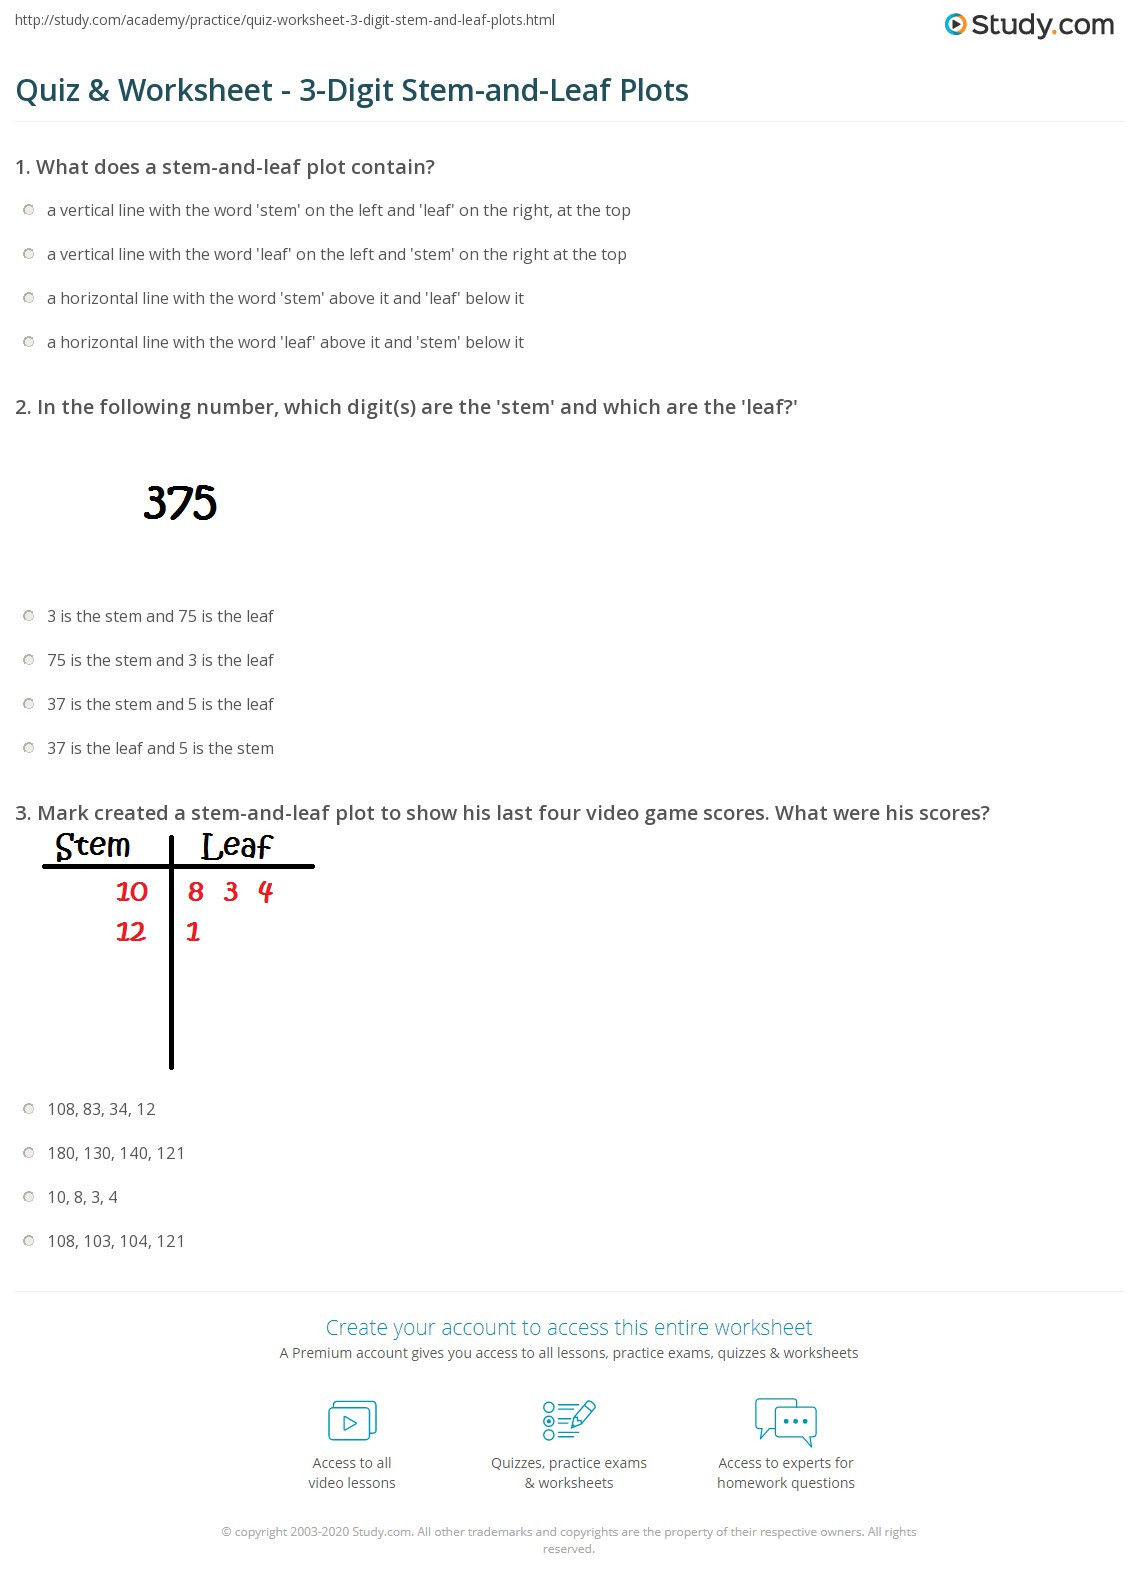 Stem and Leaf Plots Worksheet Quiz &amp; Worksheet 3 Digit Stem and Leaf Plots